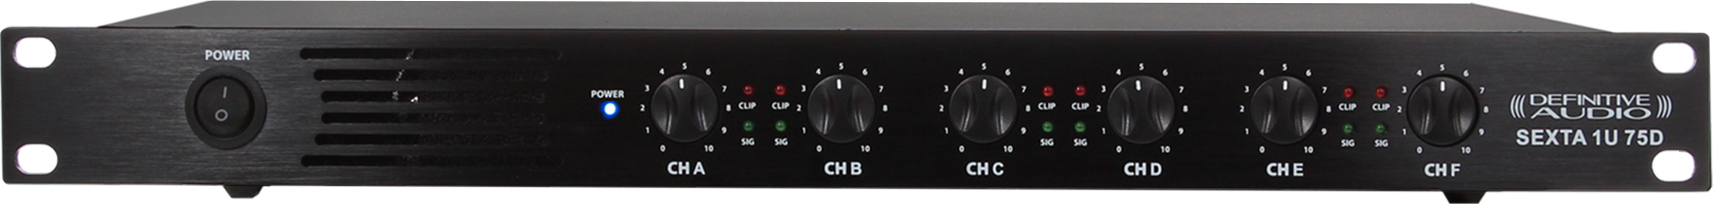 Definitive Audio Sexta 1u 75d - Multiple channels power amplifier - Main picture